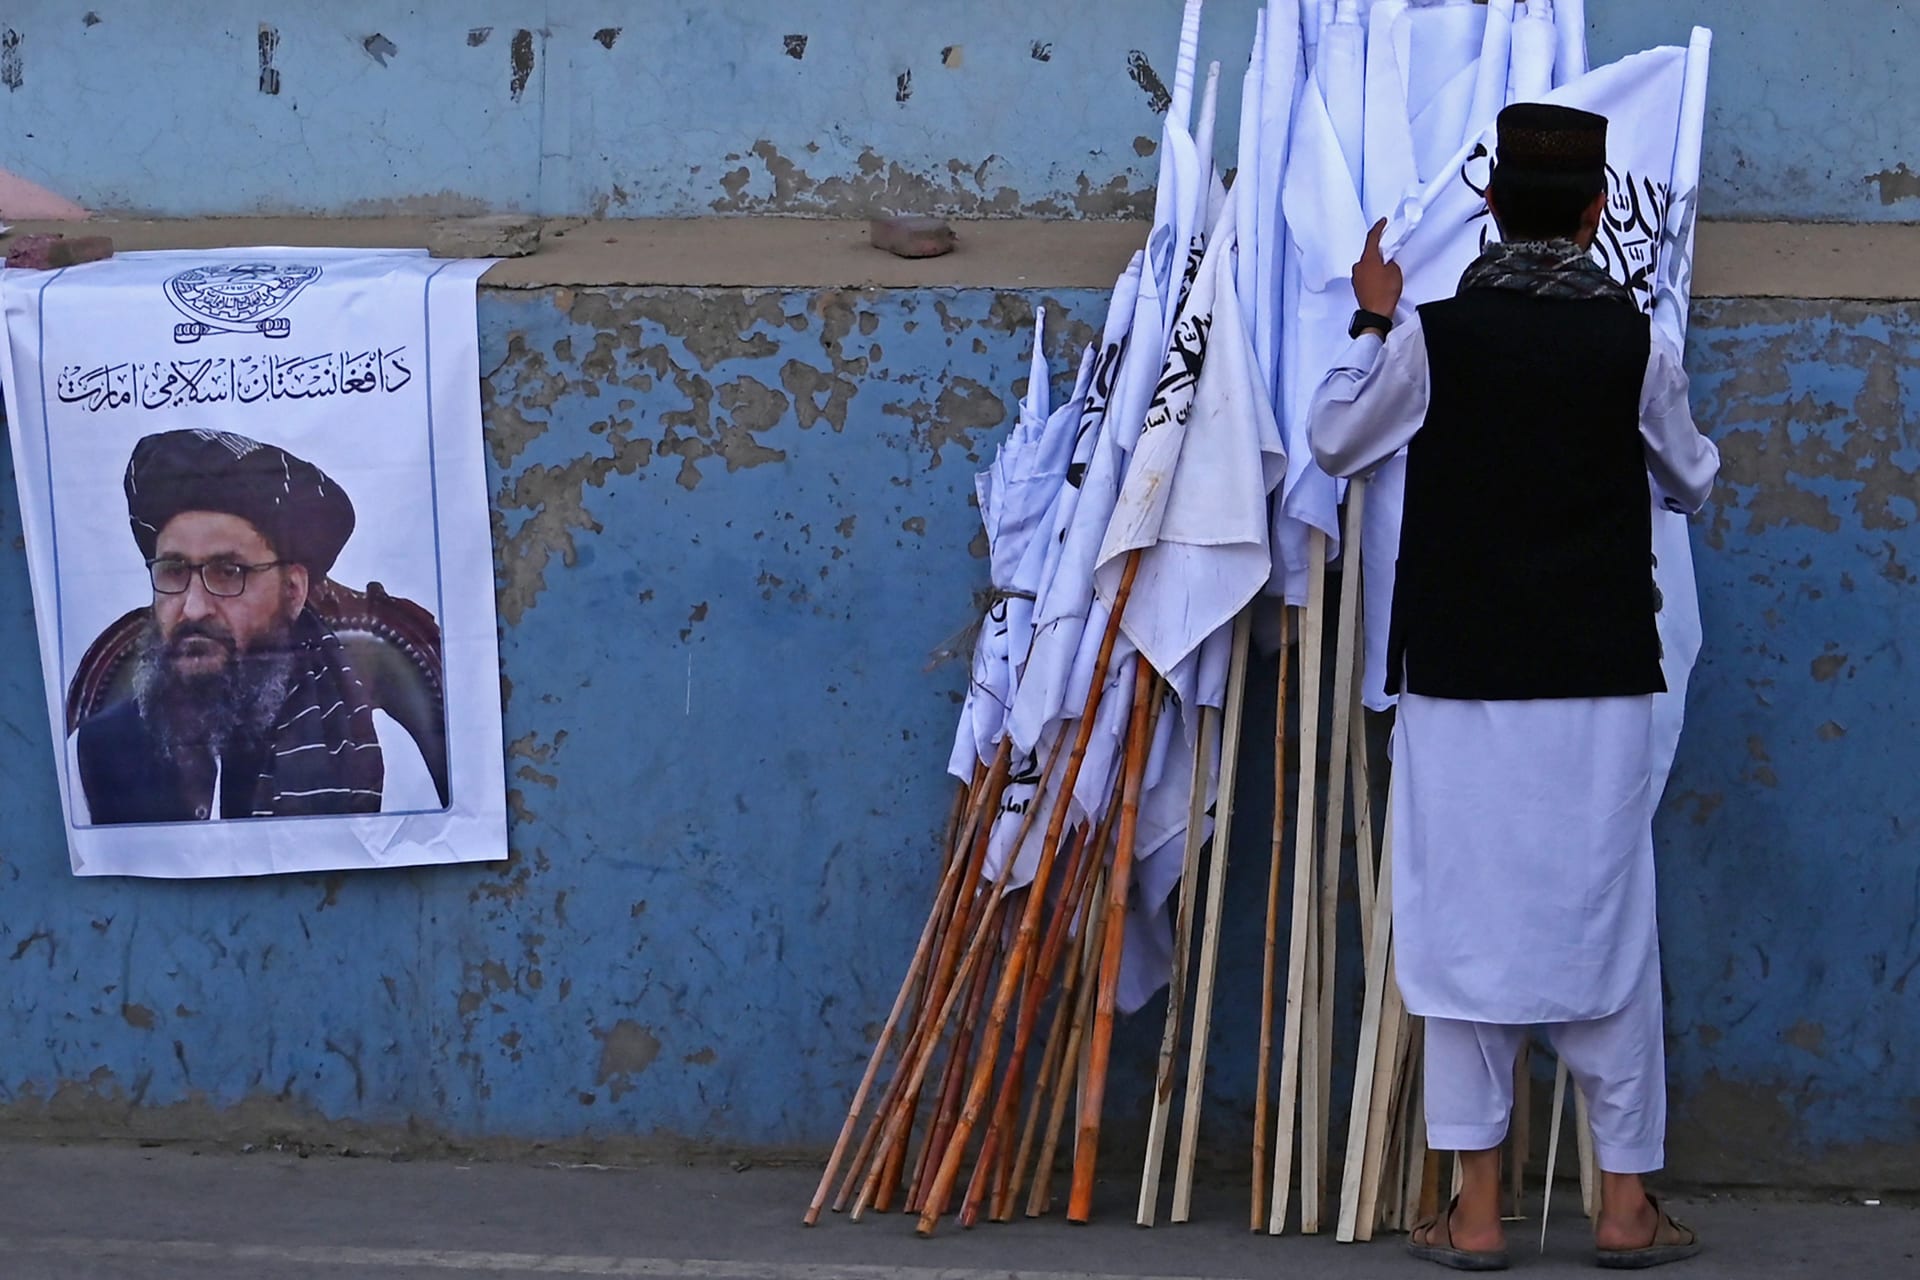   بائع أفغاني يفحص أعلام طالبان بجانب ملصق لزعيم طالبان عبد الغني بارادار على طول شارع في كابول - 27 أغسطس 2021 